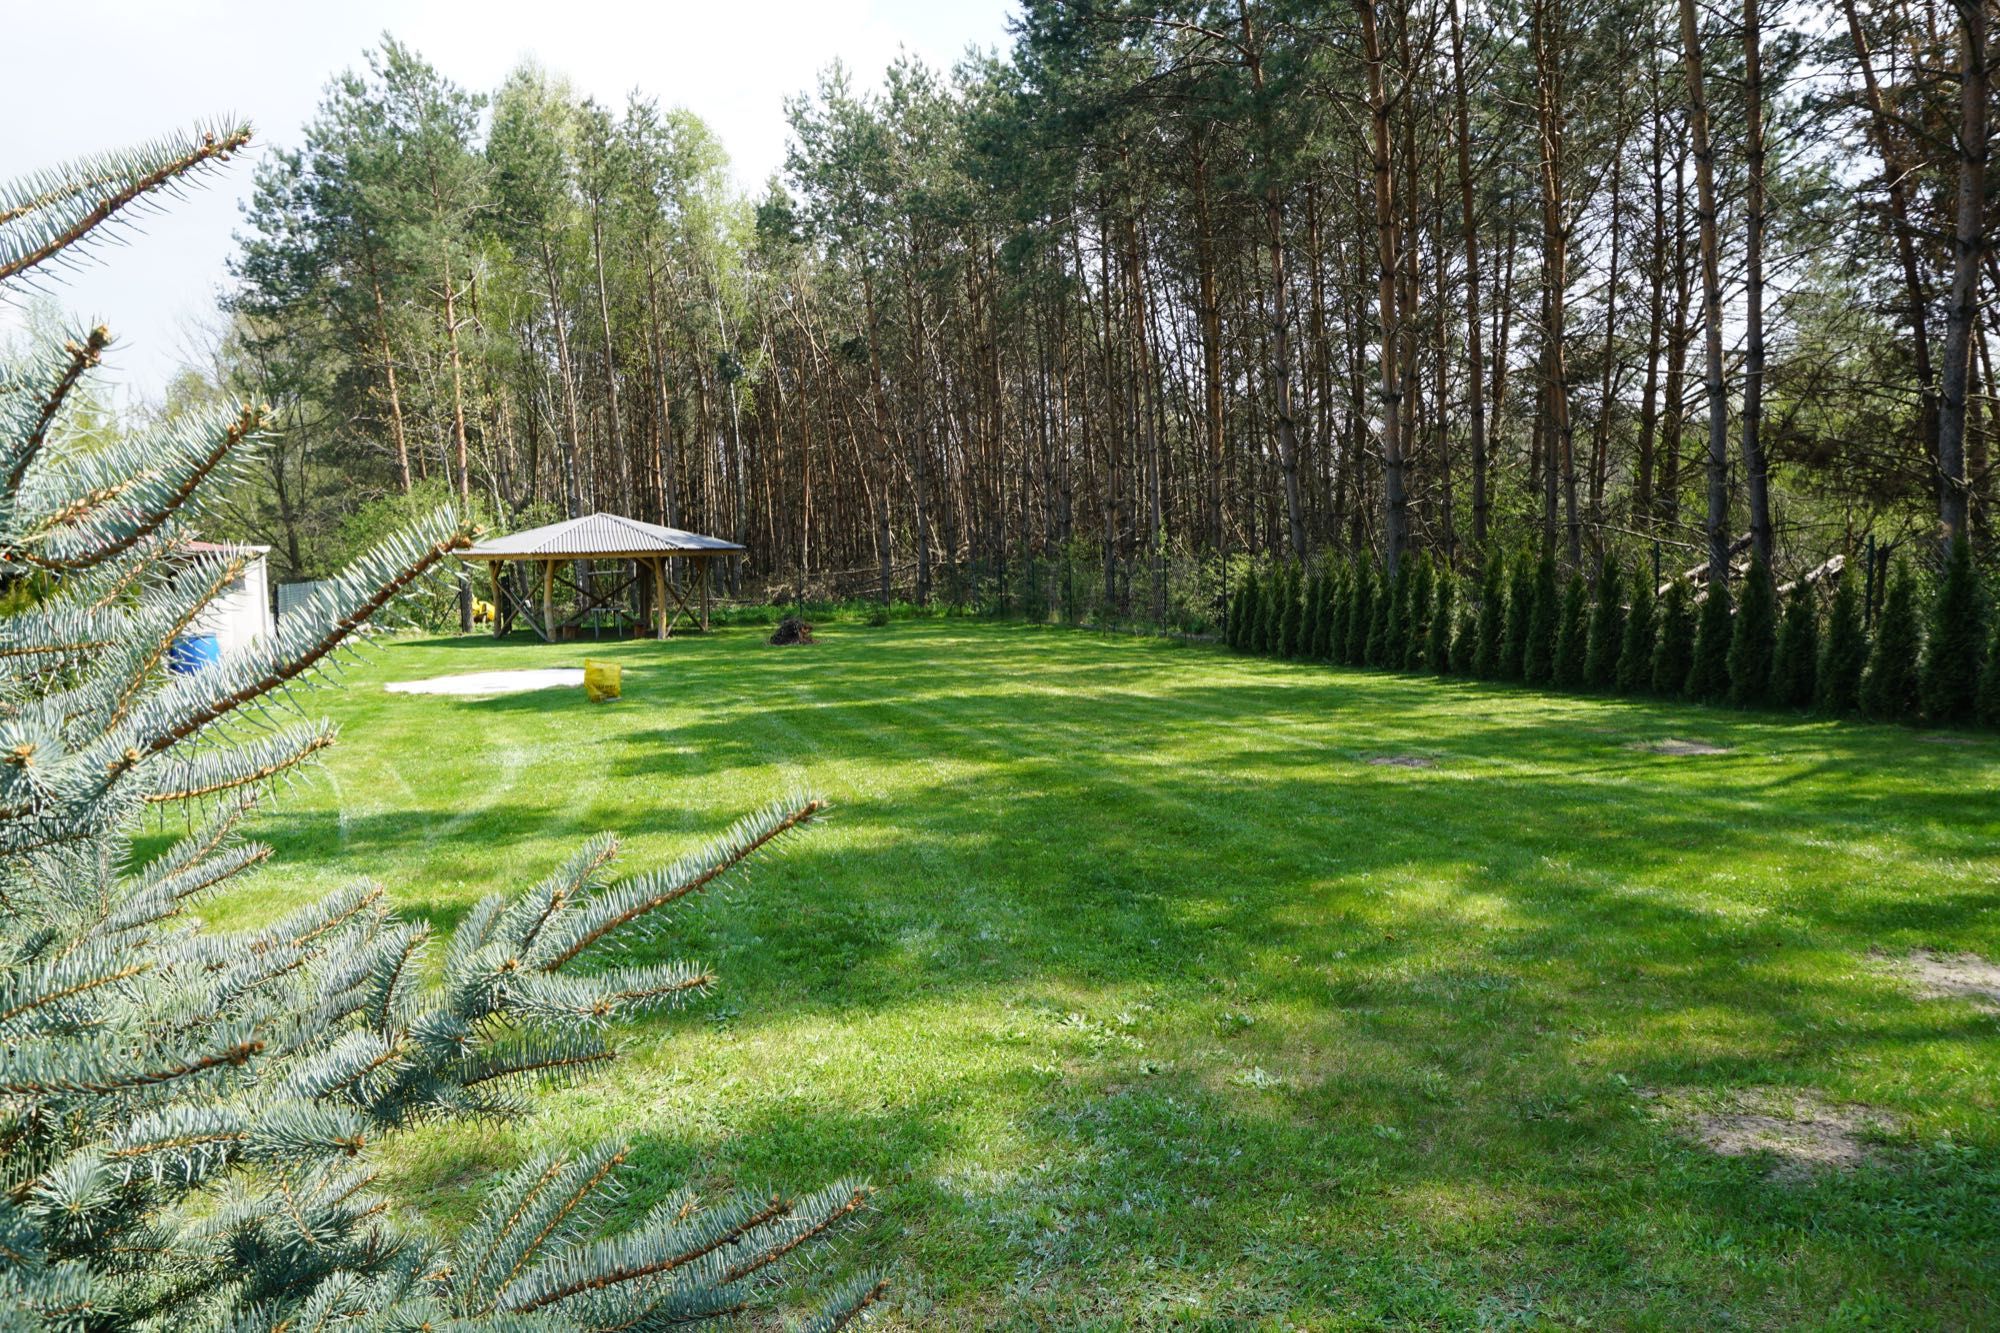 Działka rekreacyjna- ogrodzona, z własnym lasem, gotowa do budowy domu